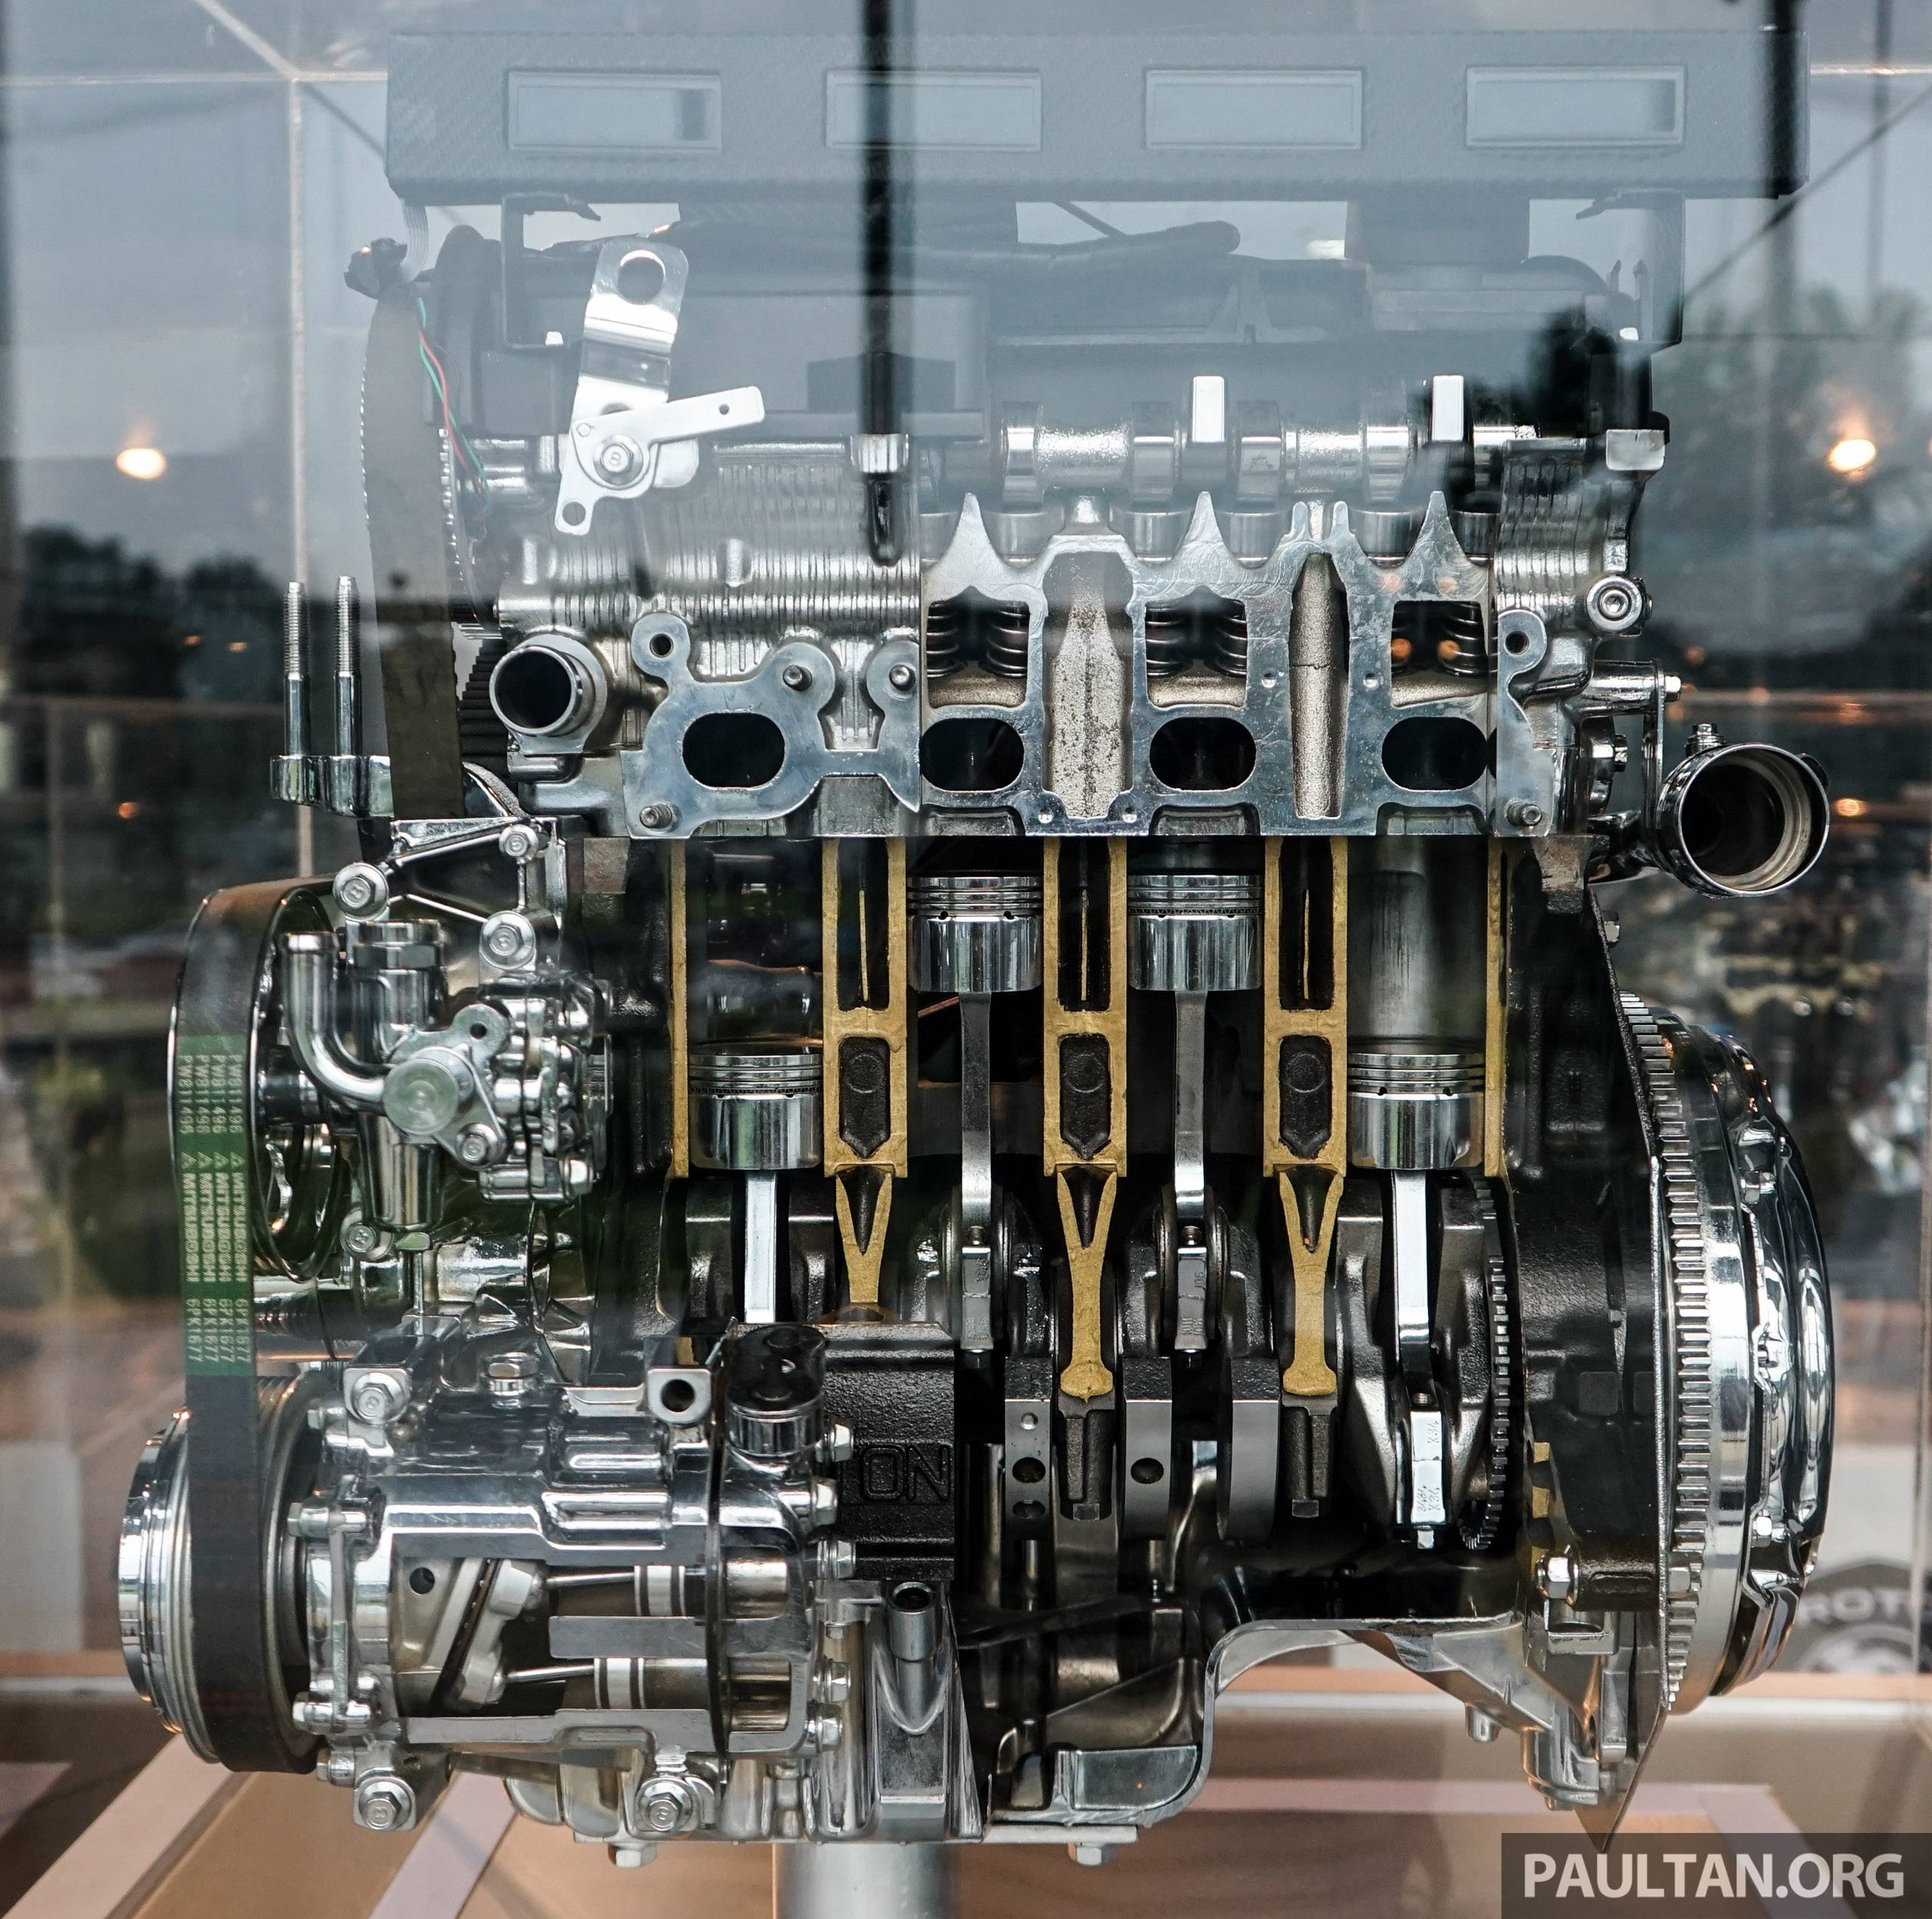 Новые двигатели hyundai t-gdi: меньше объем, больше мощность